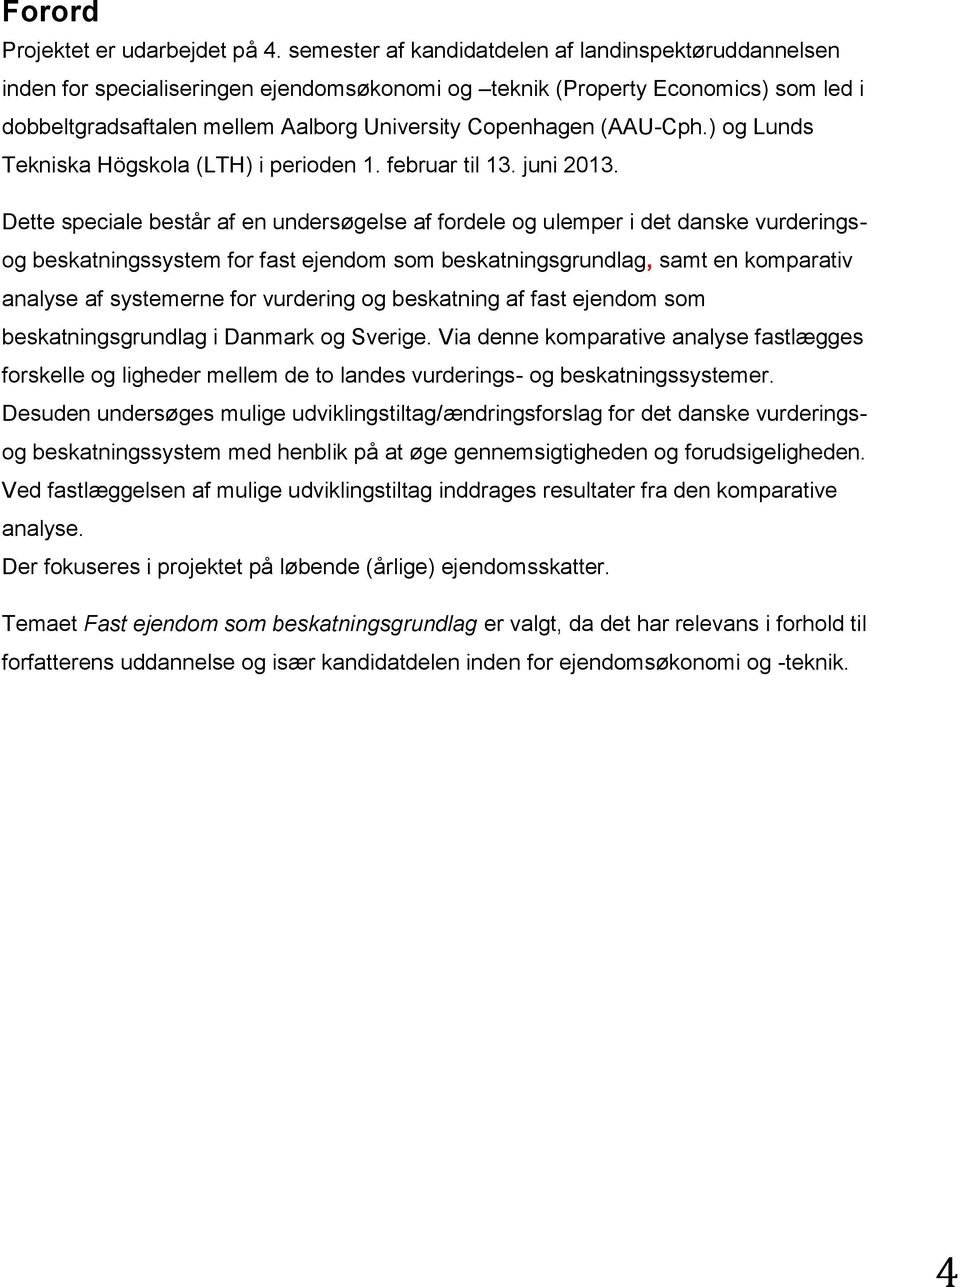 (AAU-Cph.) og Lunds Tekniska Högskola (LTH) i perioden 1. februar til 13. juni 2013.